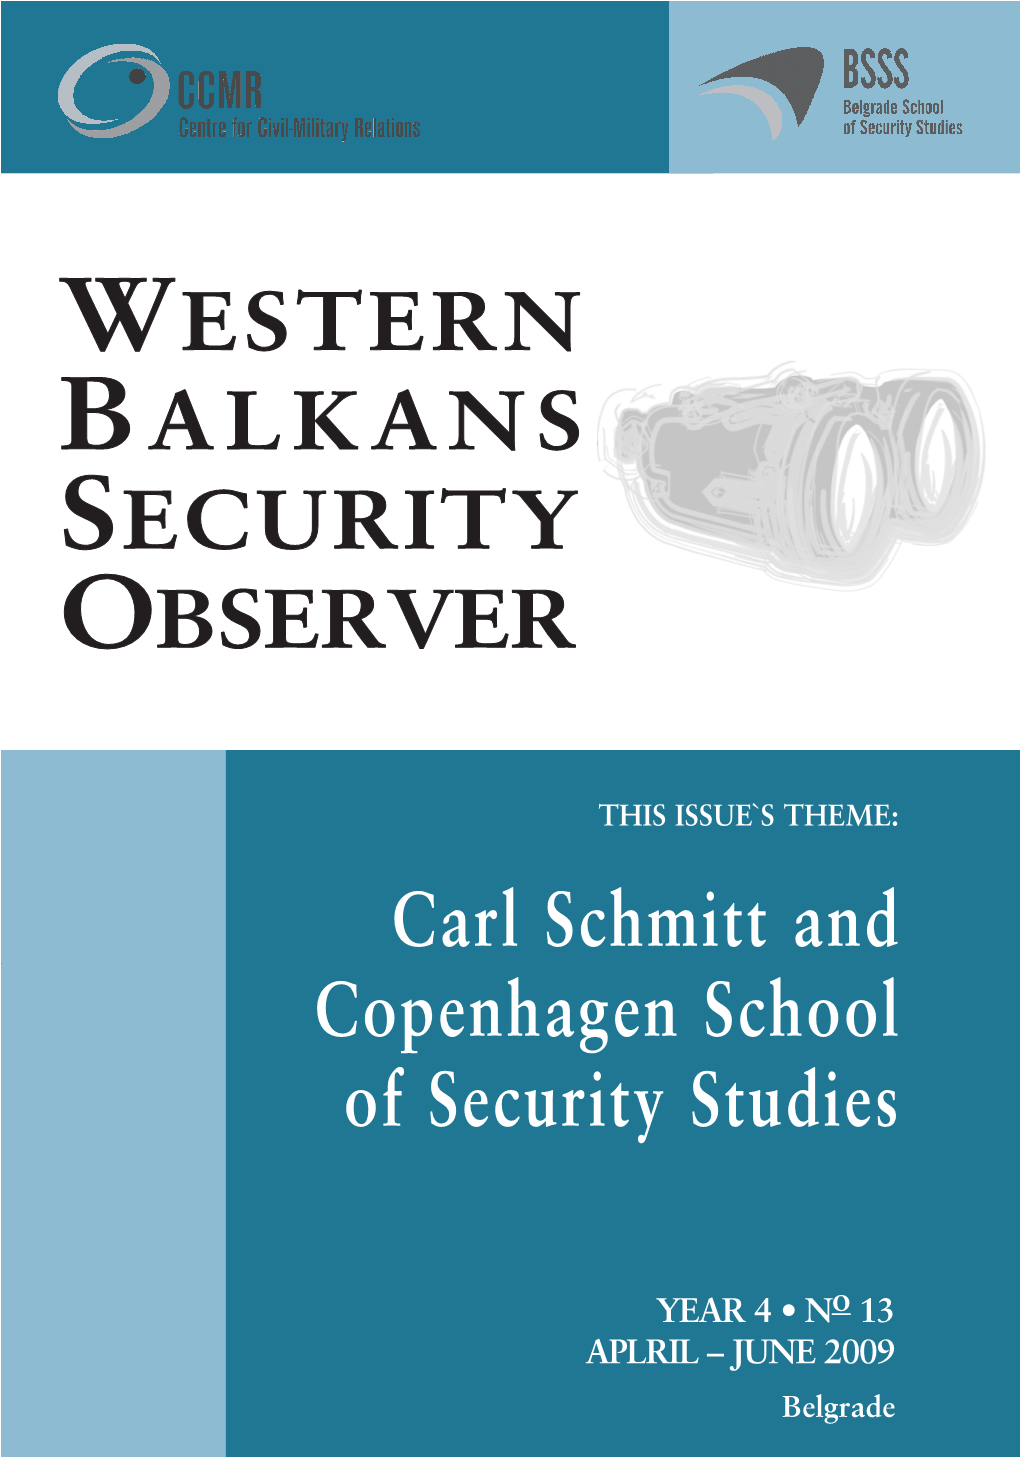 Carl Schmitt and Copenhagen School of Security Studies